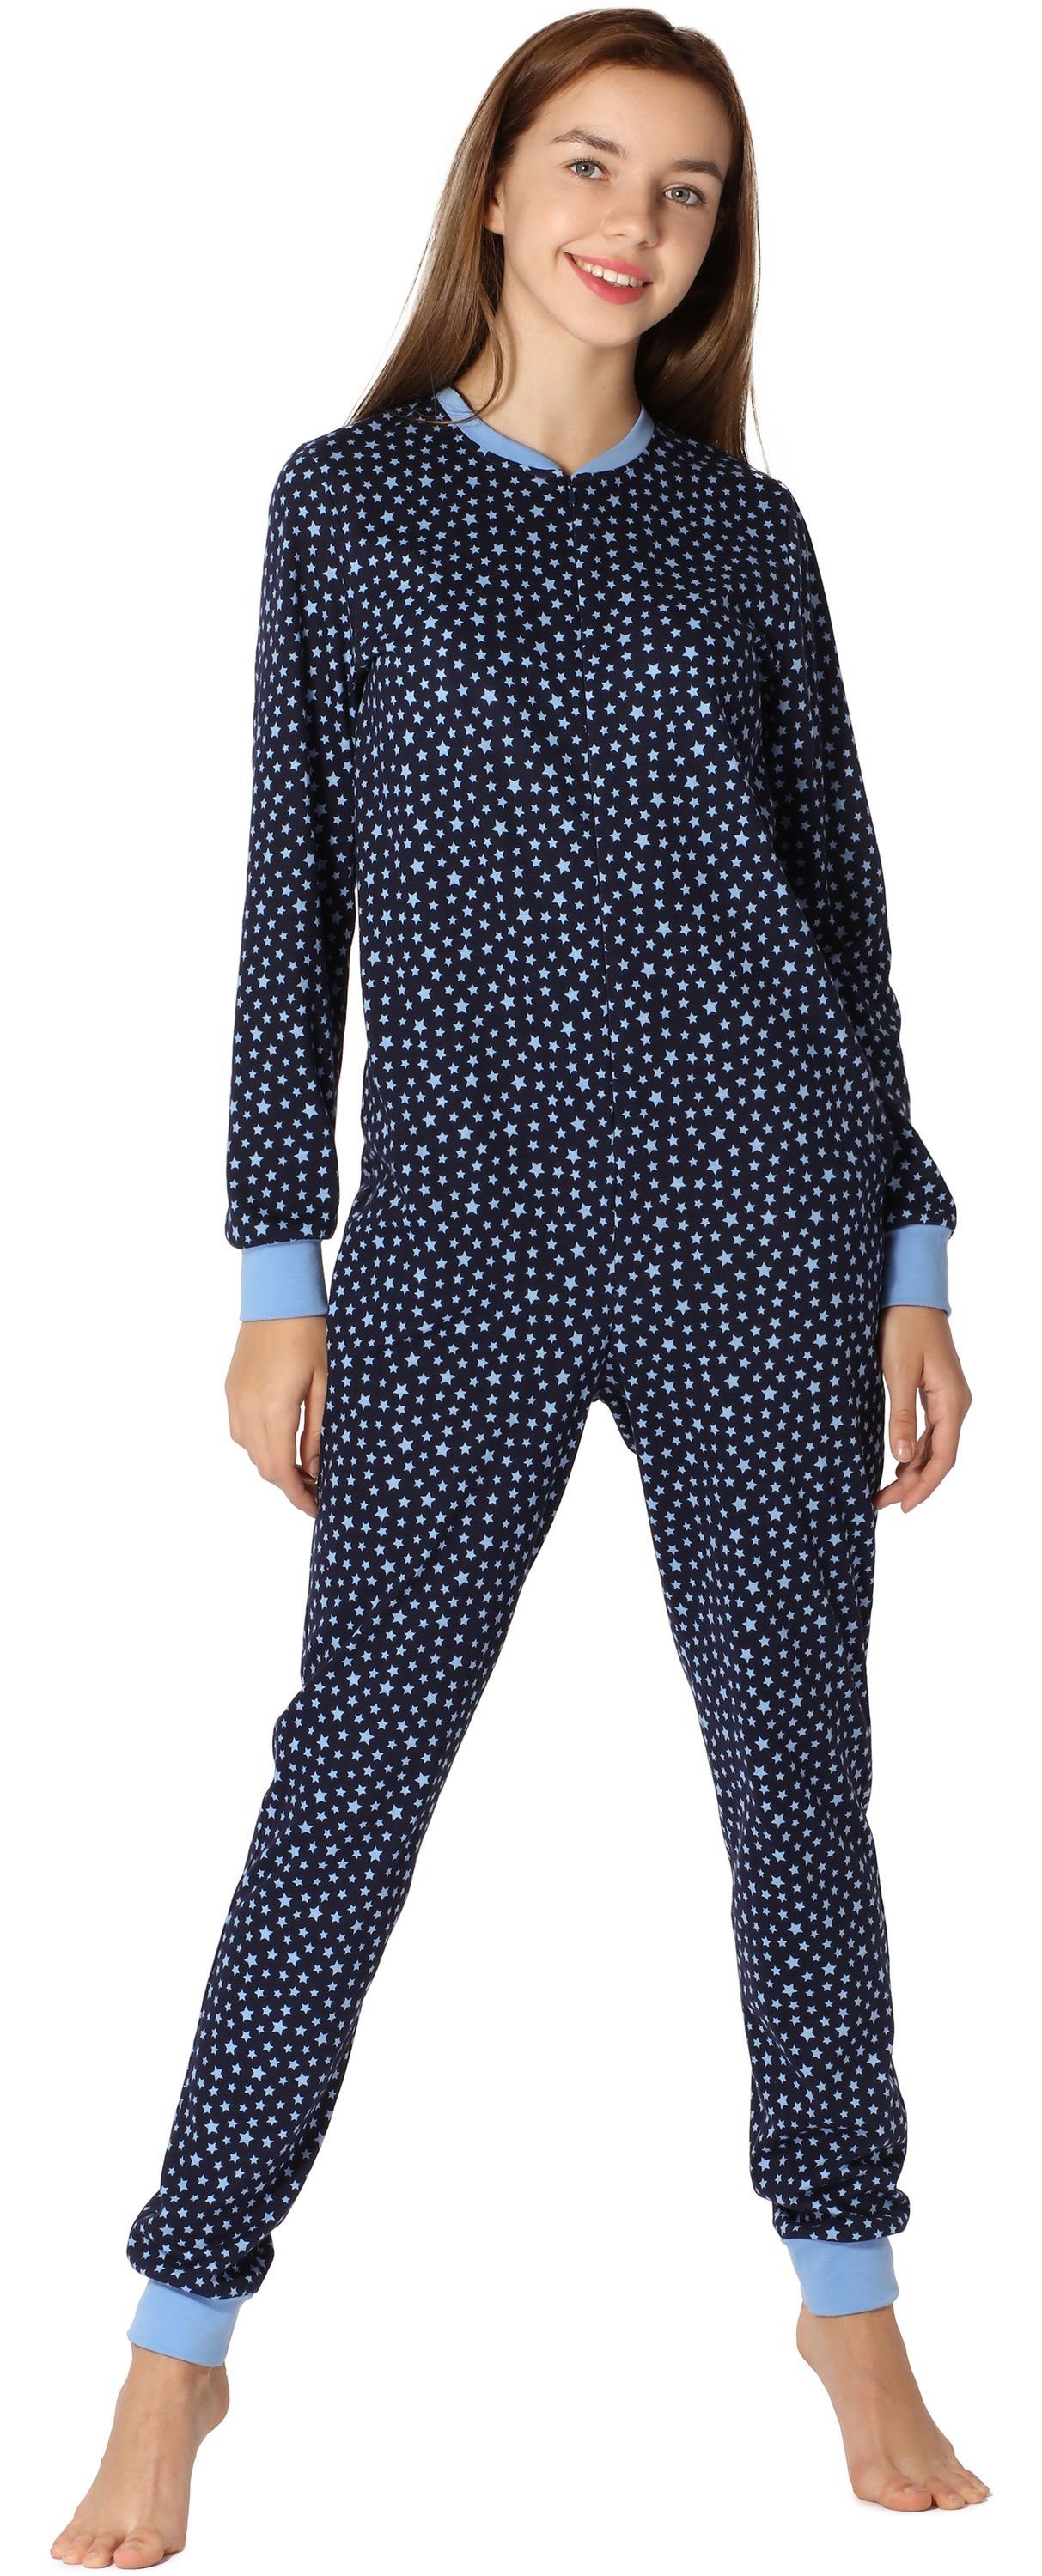 Merry Style Schlafanzug Mädchen Jugend Schlafanzug Schlafoverall MS10-235 Blau/Sterne